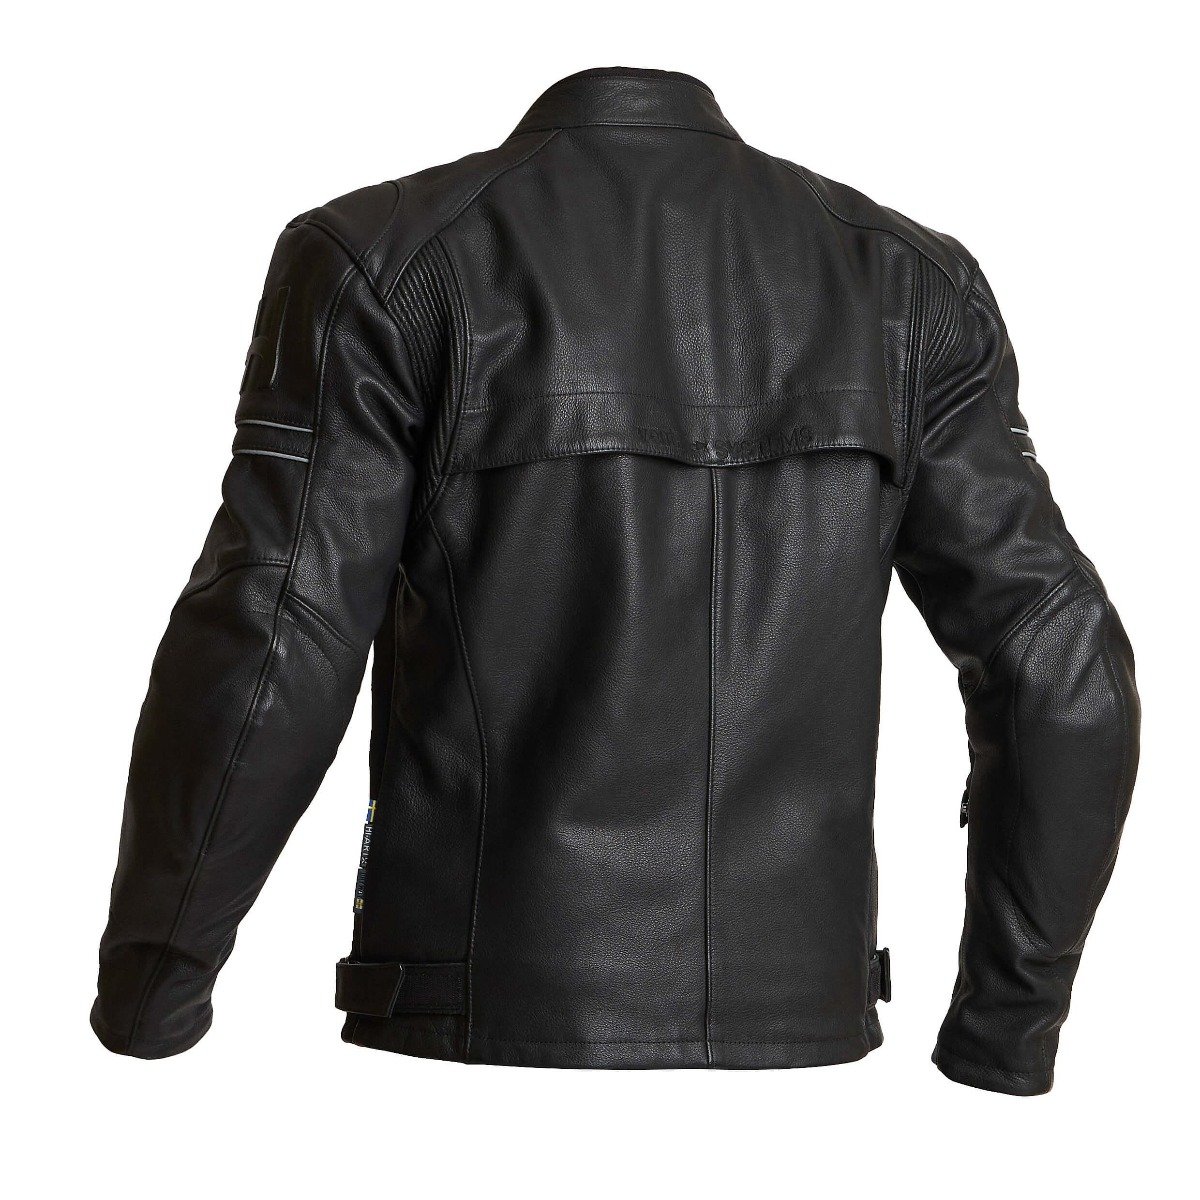 Image of Halvarssons Idre Jacket Black Size 58 EN